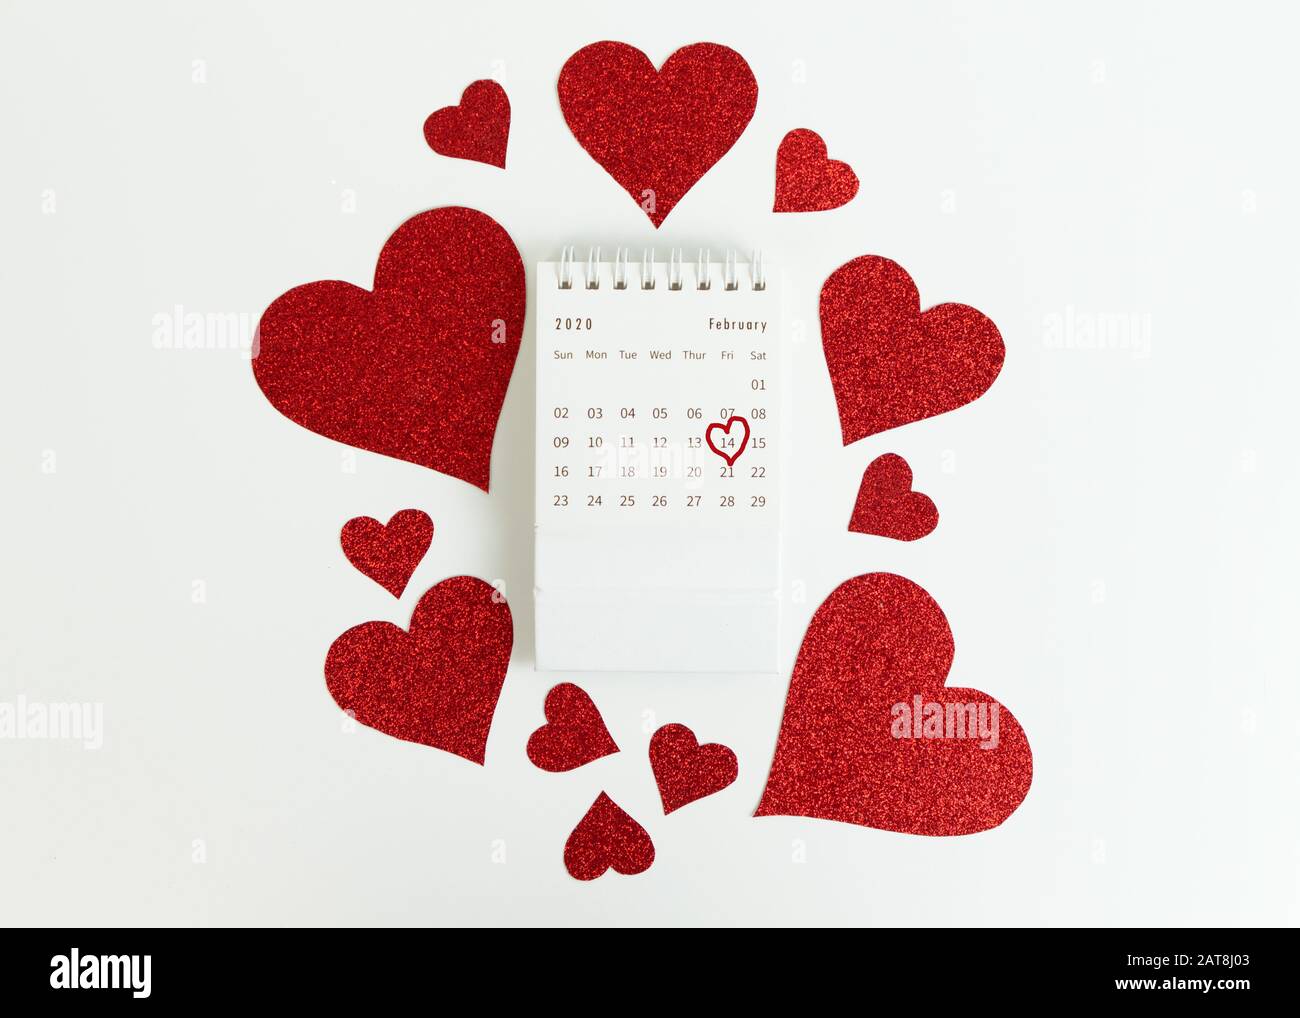 Calendario di febbraio. Data 14 febbraio è cerchiata da un cuore. Circondato da un cuore rosso glitter. Foto Stock